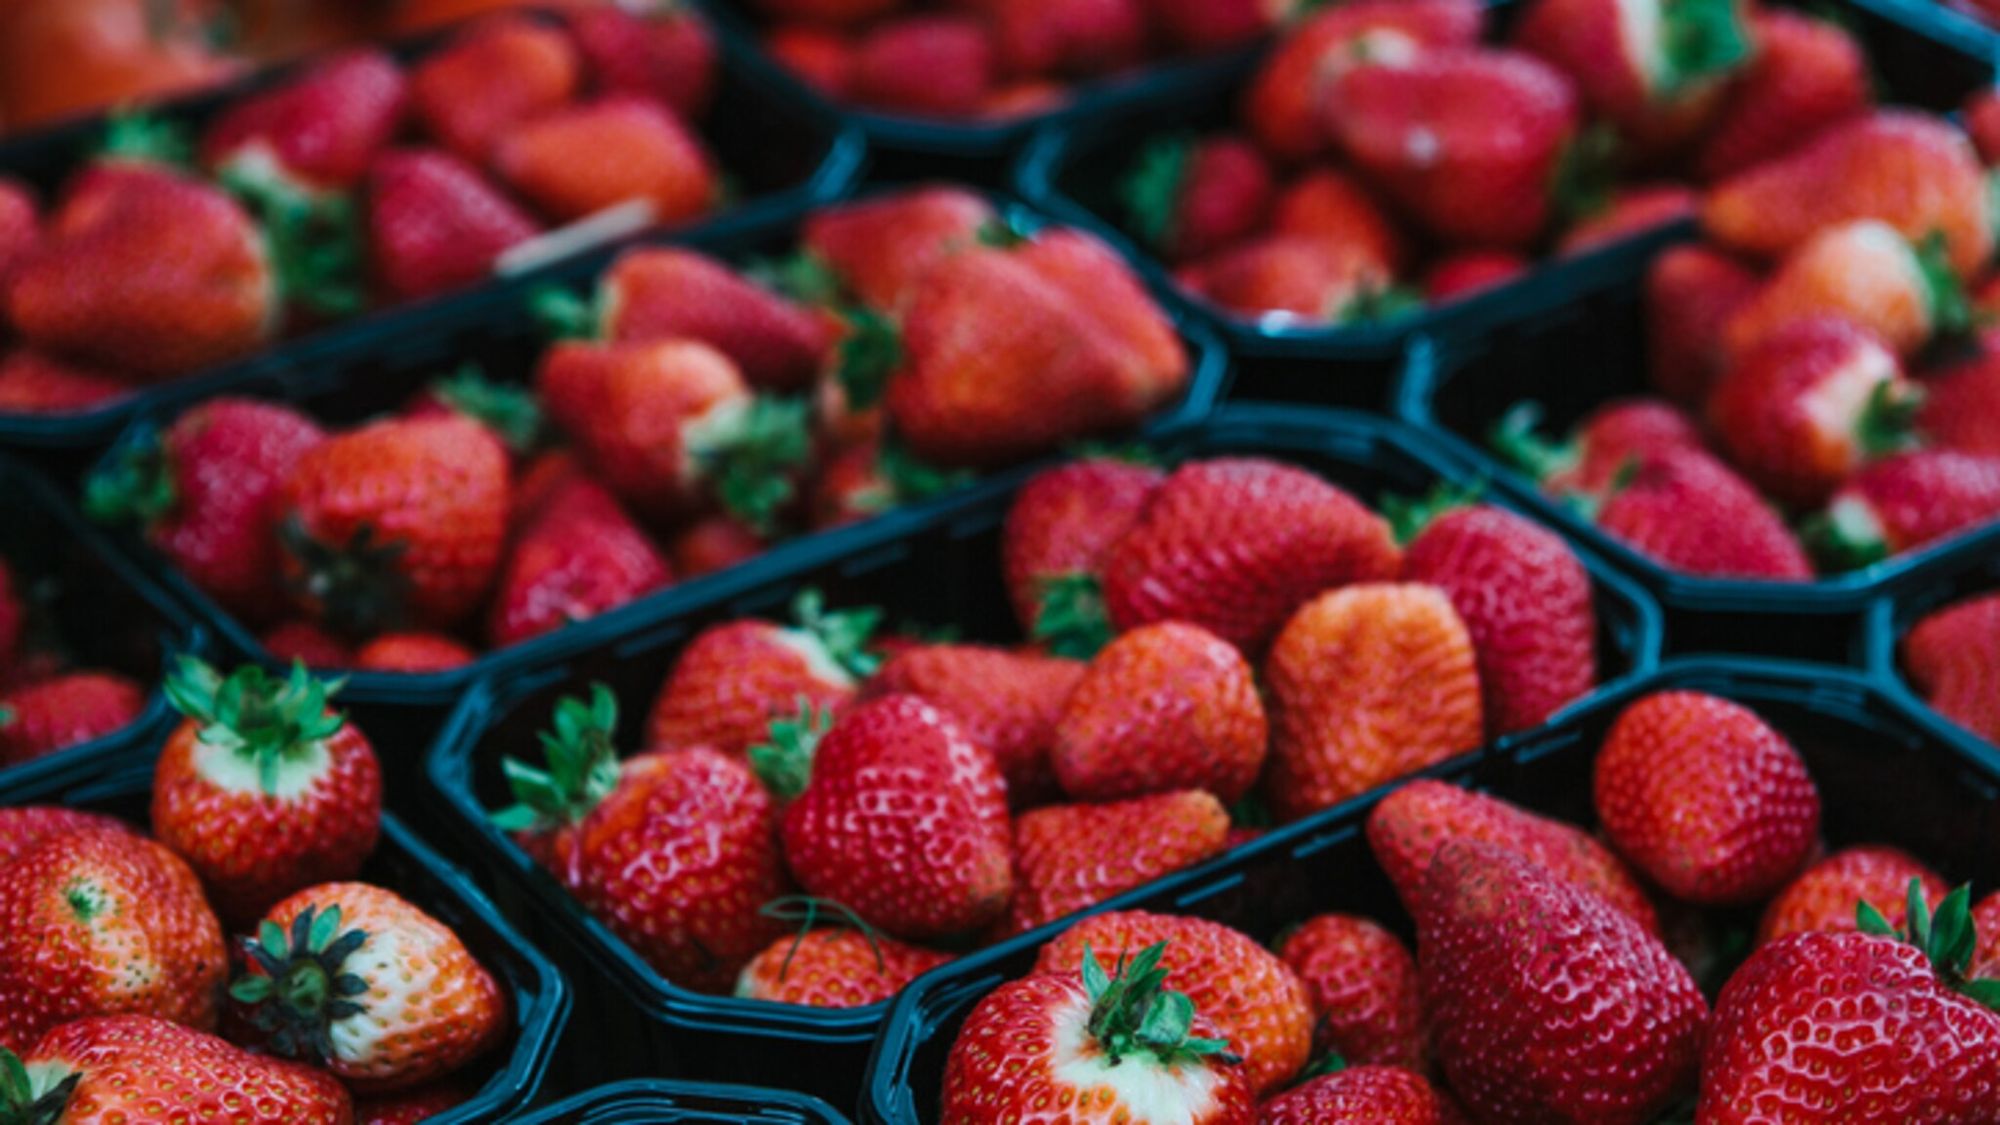 Aardbeienbakjes: bescherm uw fruit met de juiste bakjes